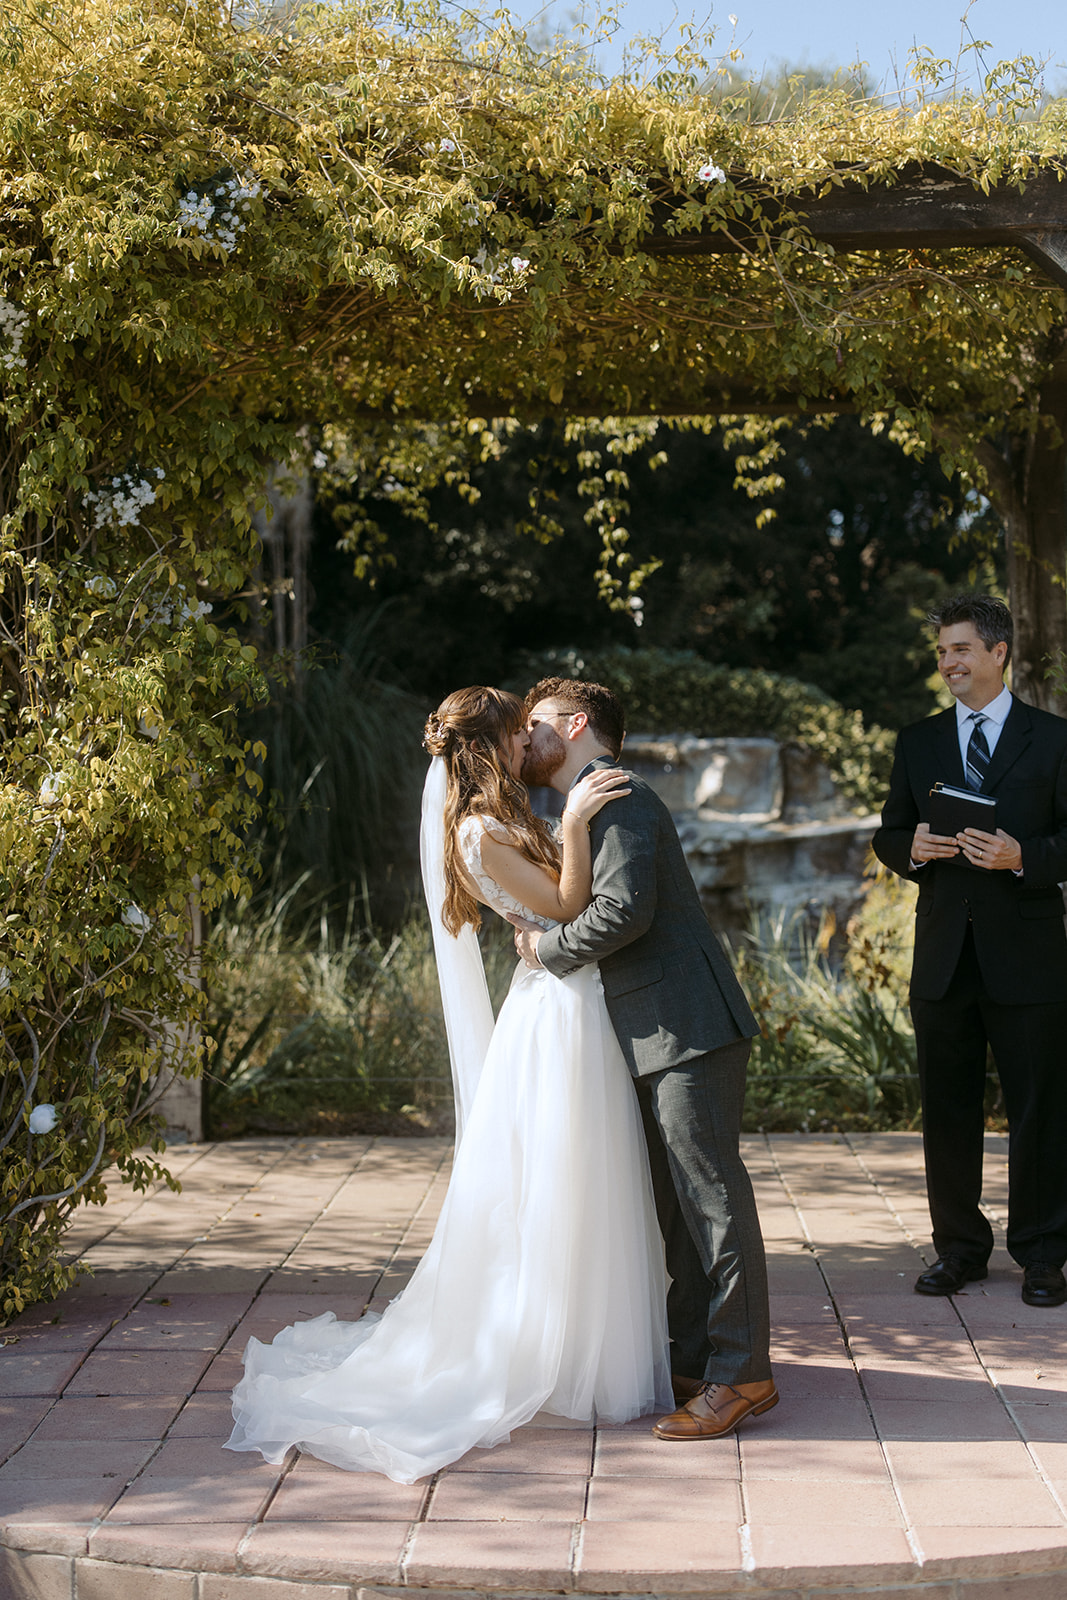 Bride and groom kissing to conclude wedding ceremony at La Arboleda in California